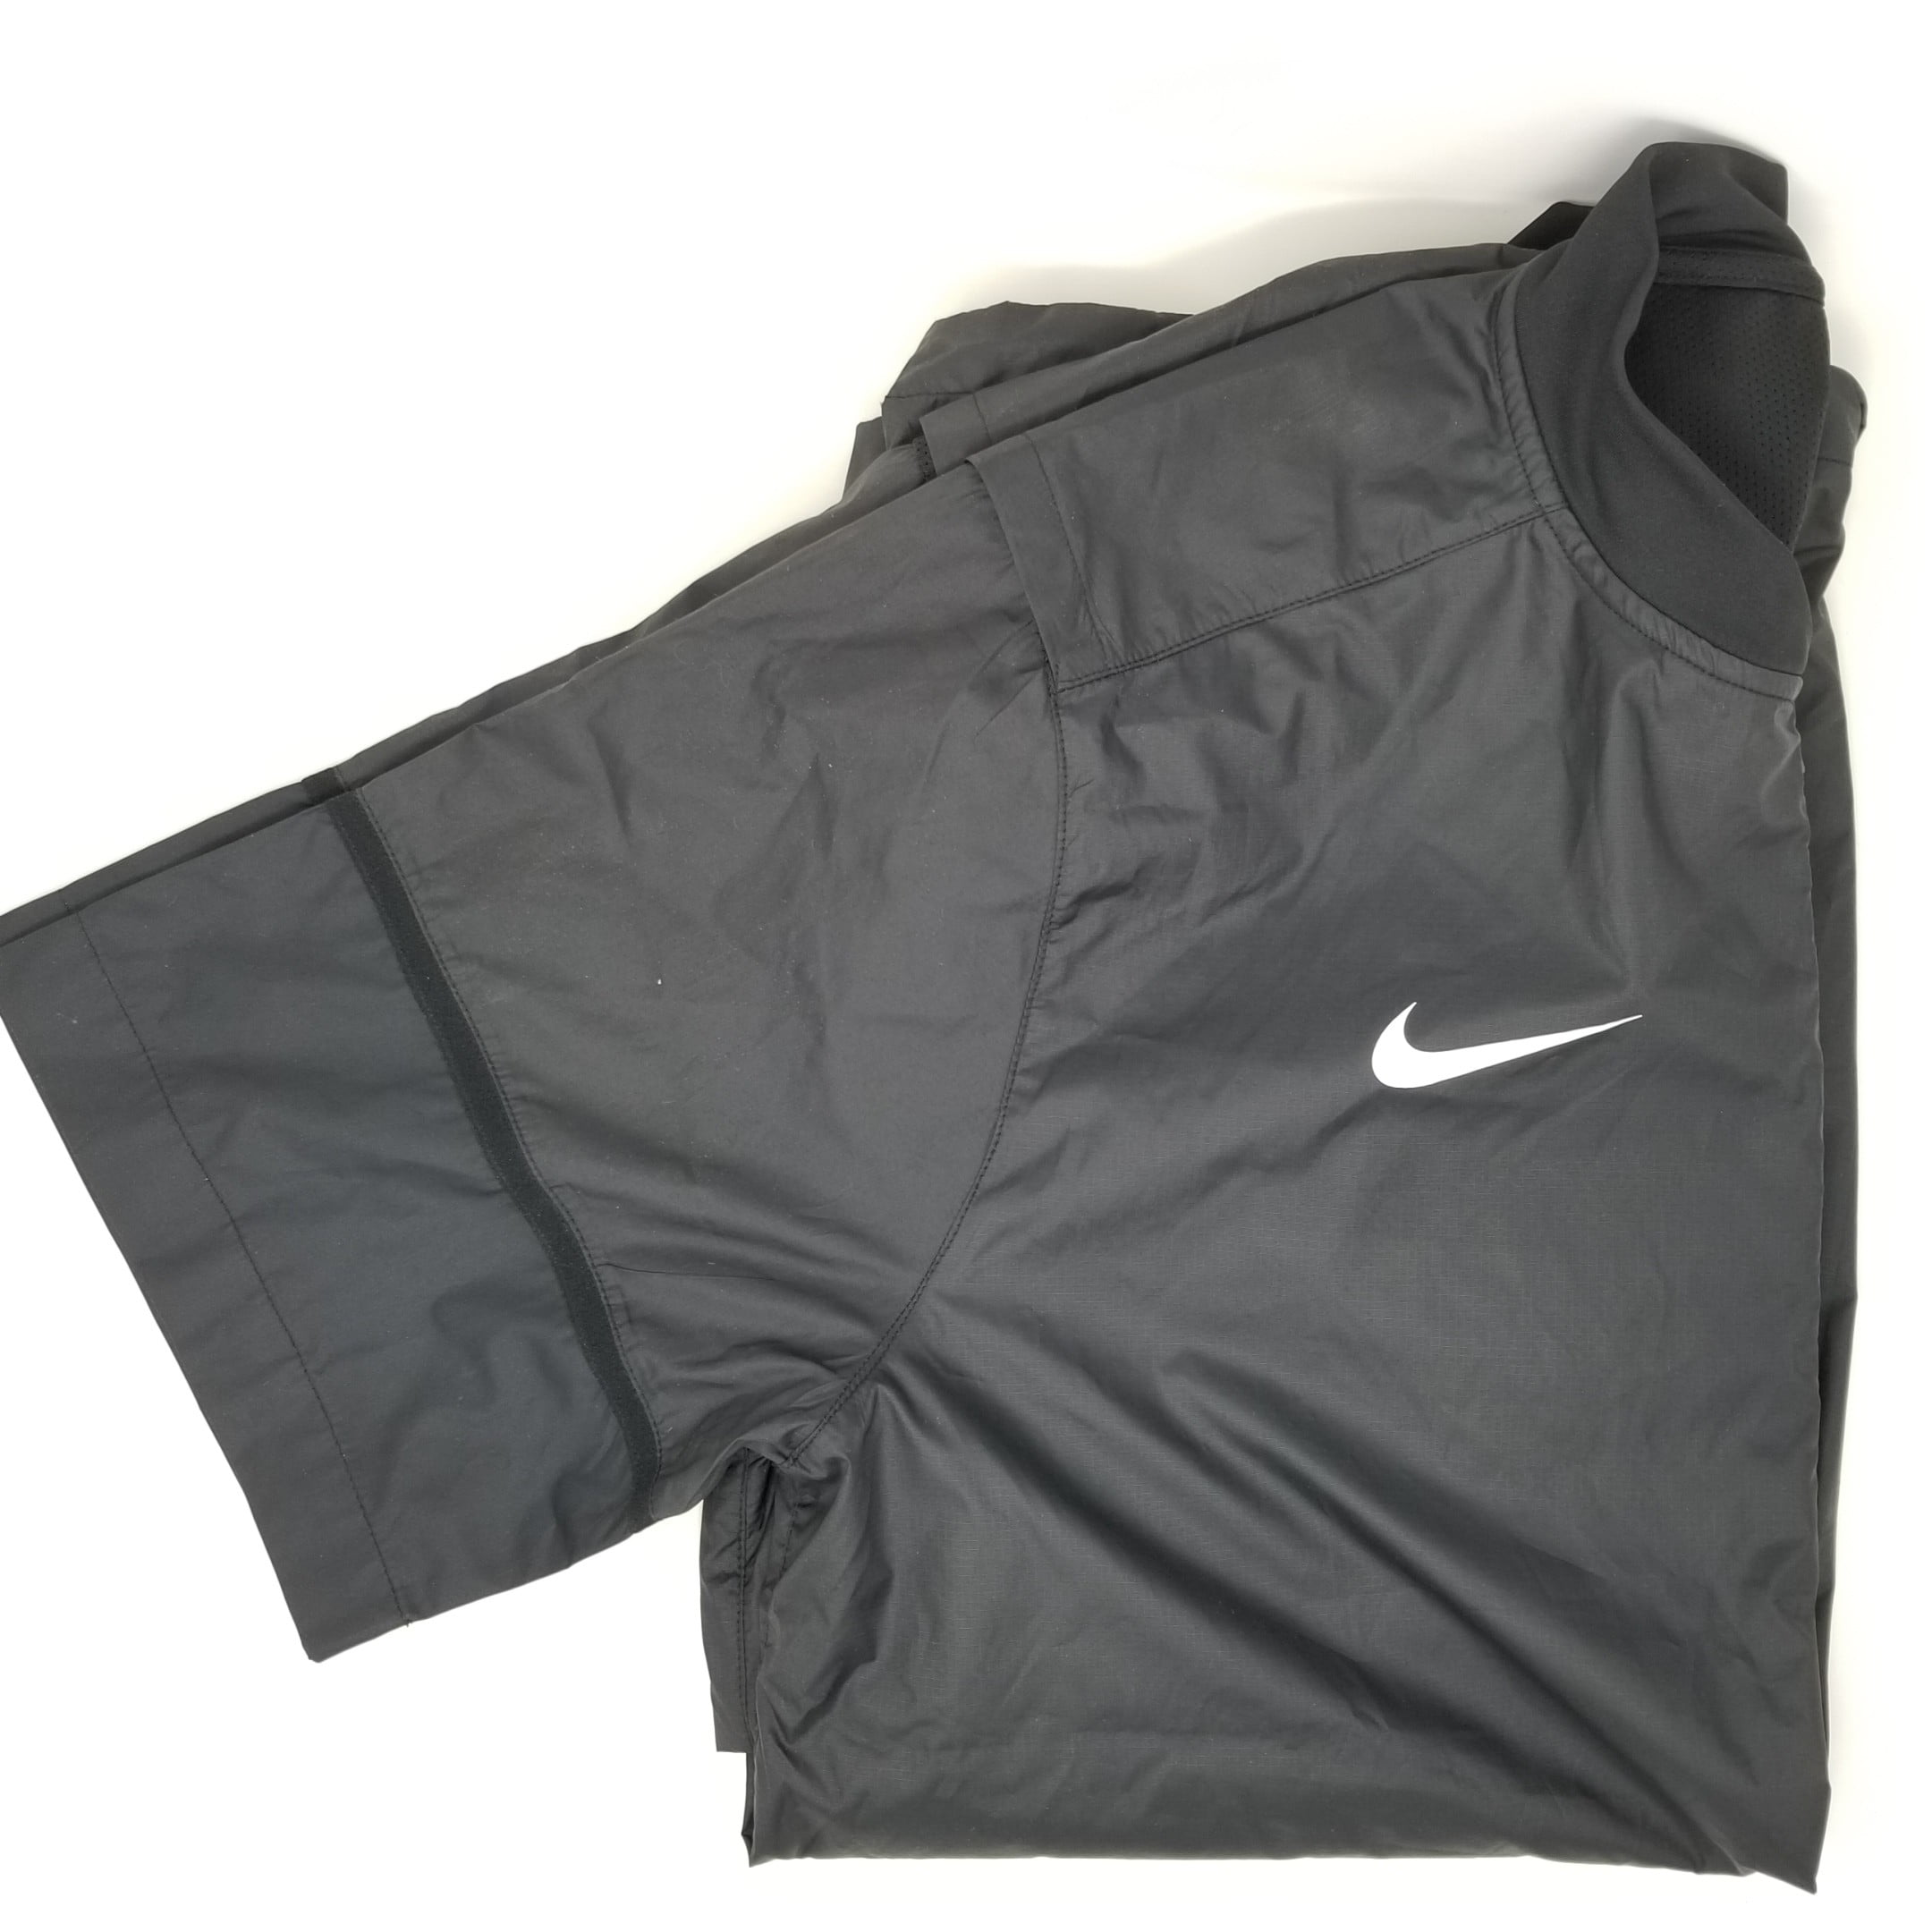 Nike MLB Baseball Hot Jacket Short Sleeve Shirt Cage Jacket Grey Size L  Large